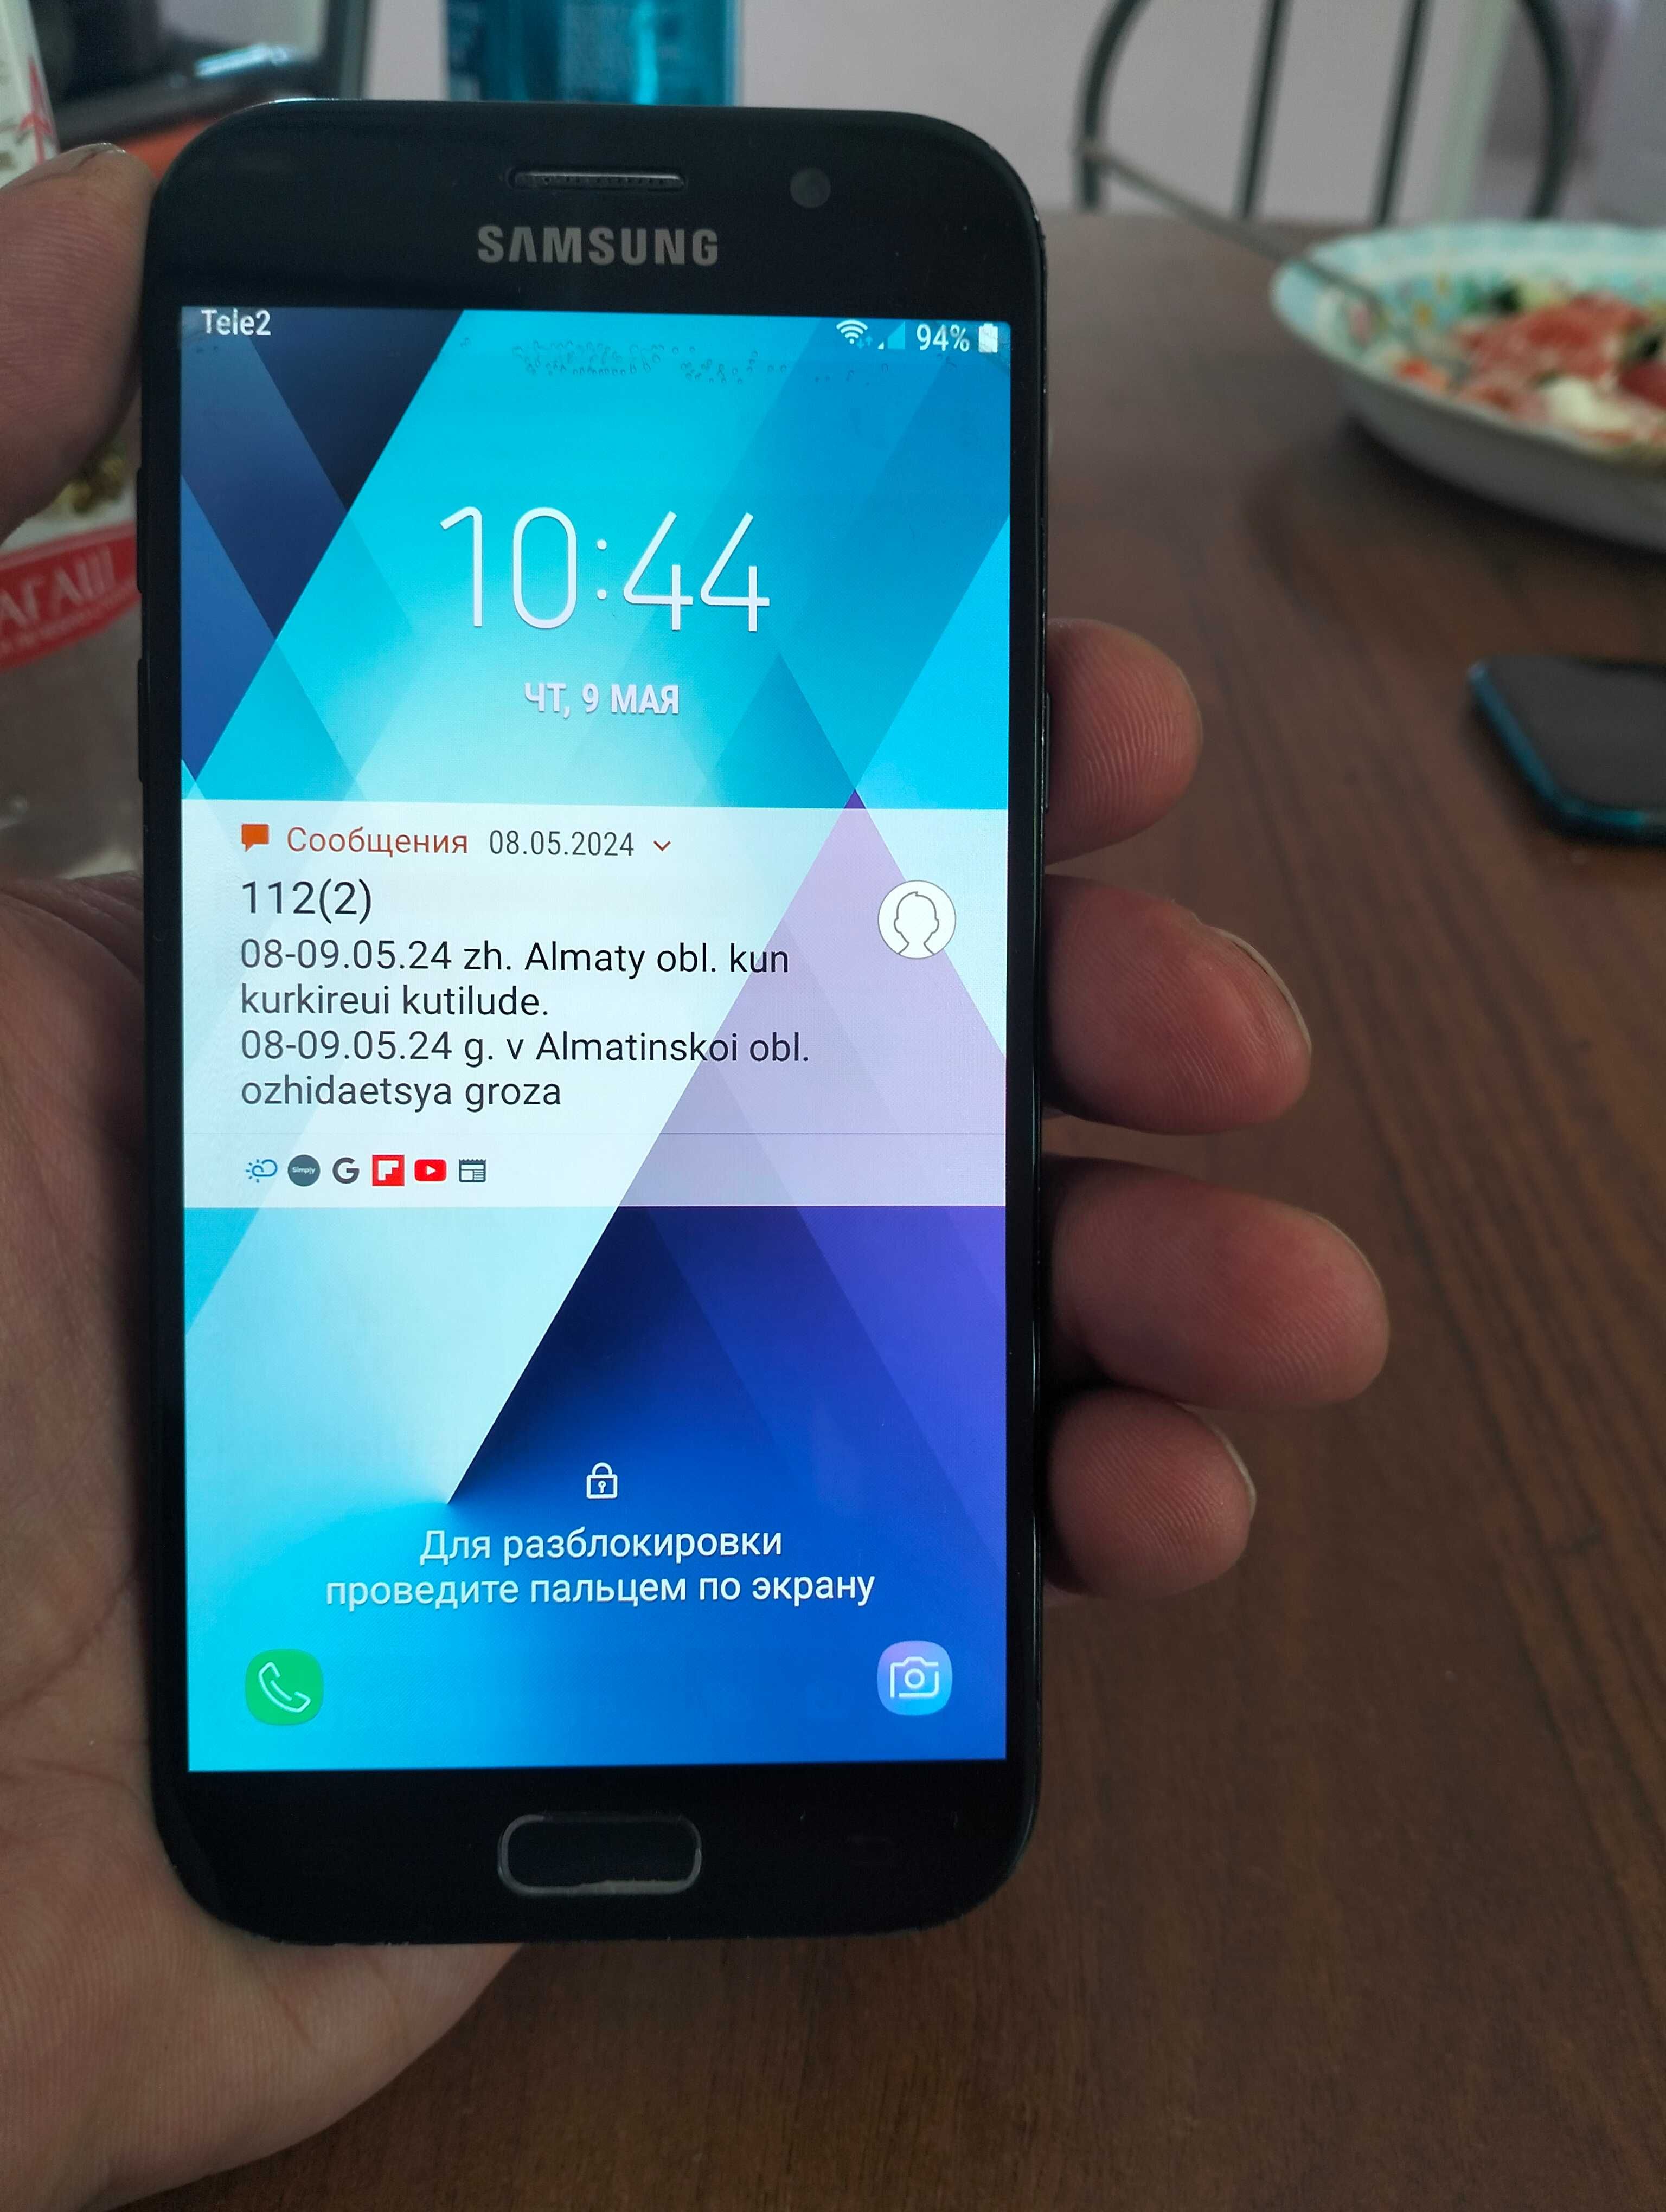 Продам смартфон Самсунг A5  2017 года. Возможна доставка по Алматы !